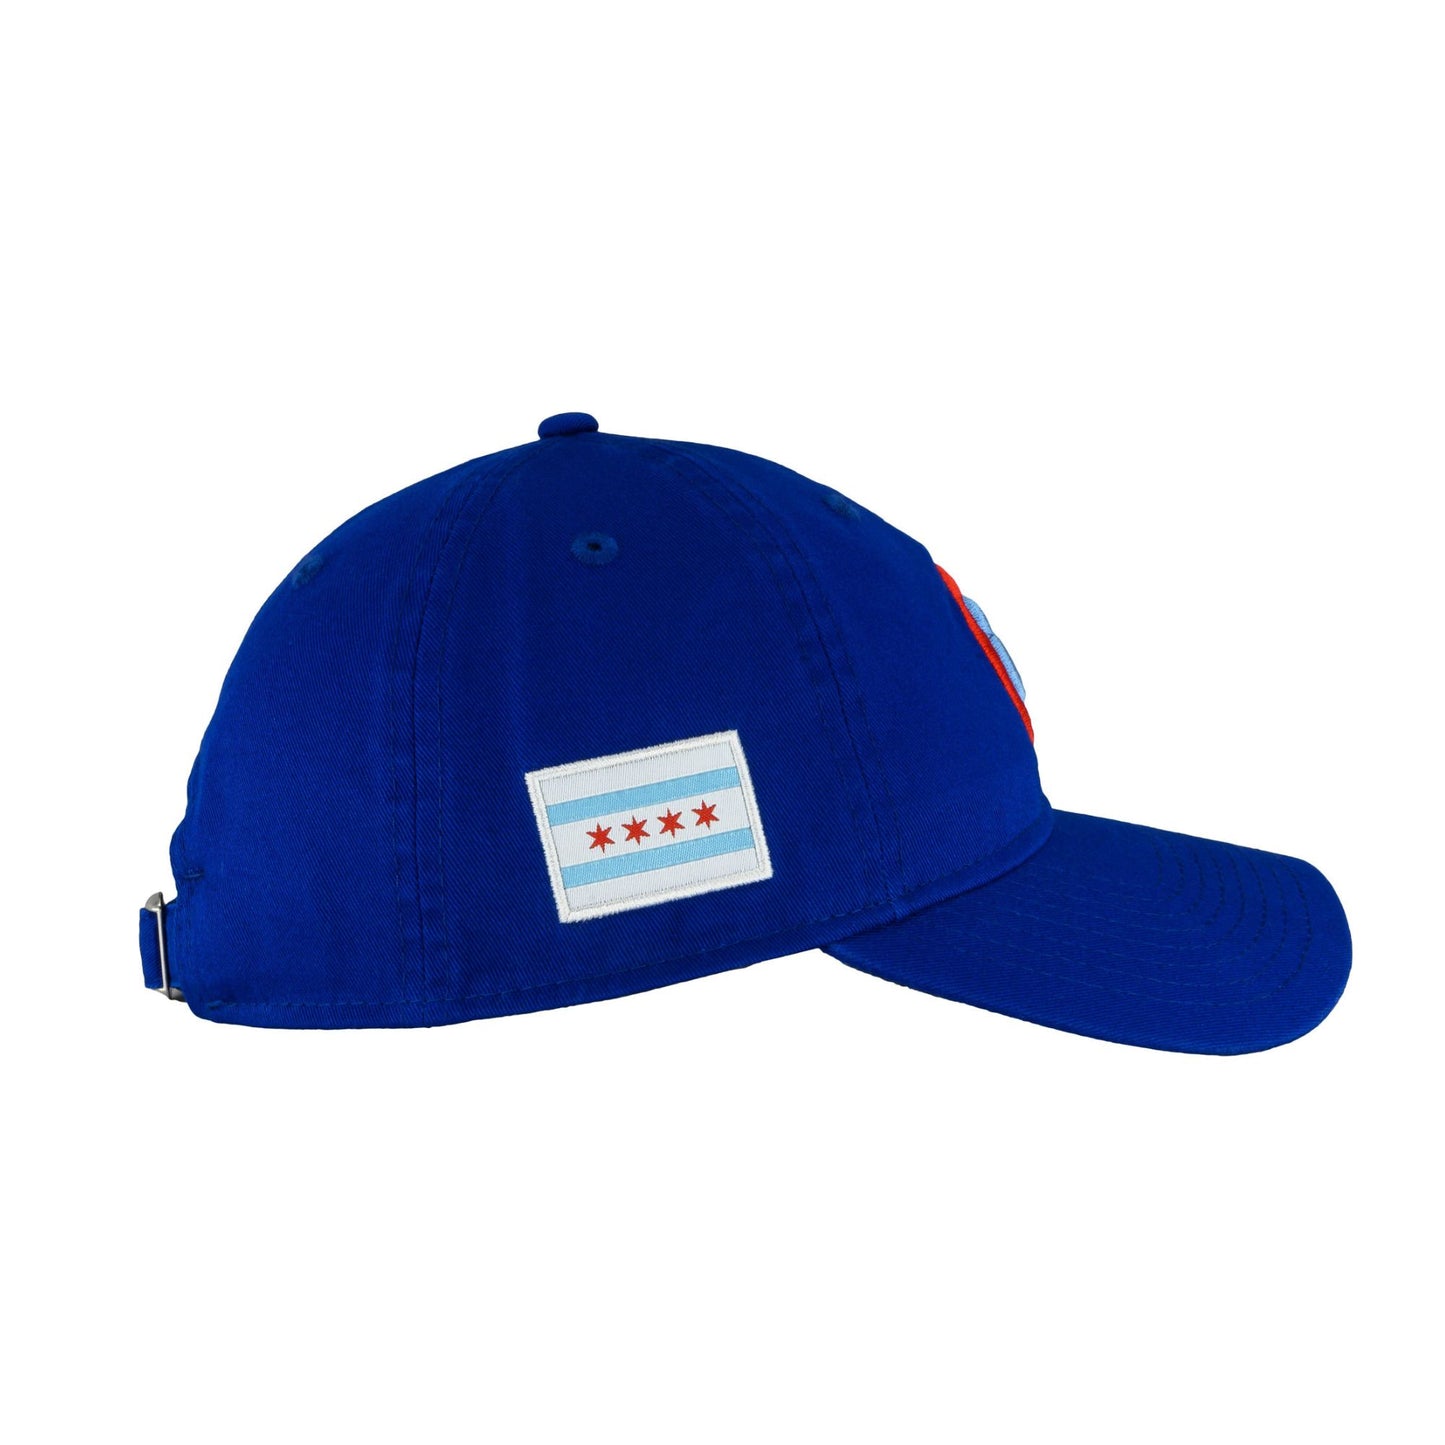 Chicago Cubs Cooperstown New Era 9TWENTY Adjustable Hat